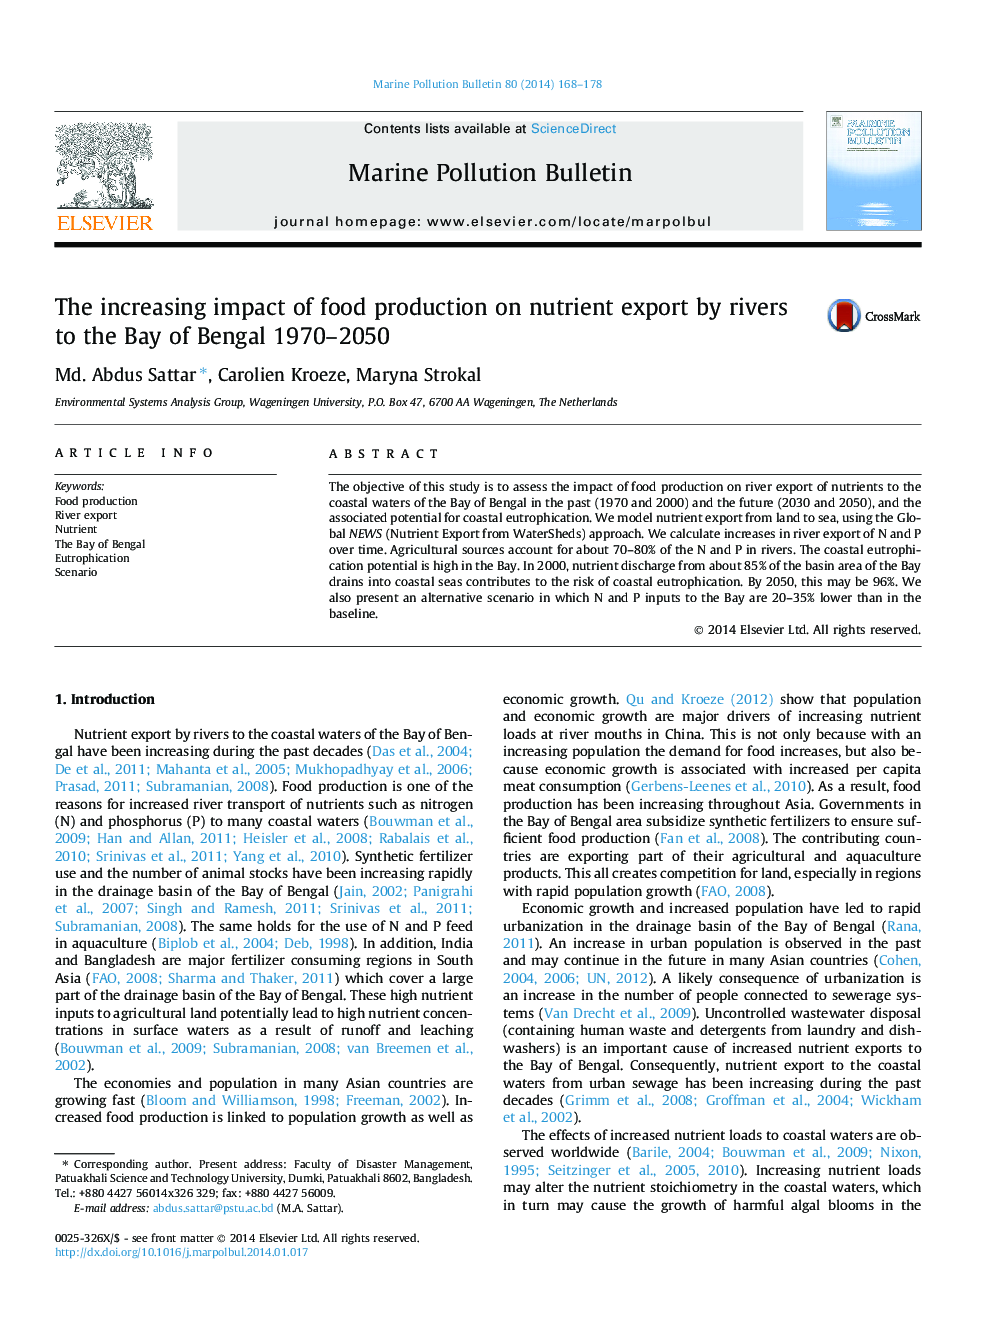 تأثیرات روزافزون تولید غذا بر صادرات مواد مغذی رودخانه ها به خلیج بنگال 1970-2050 